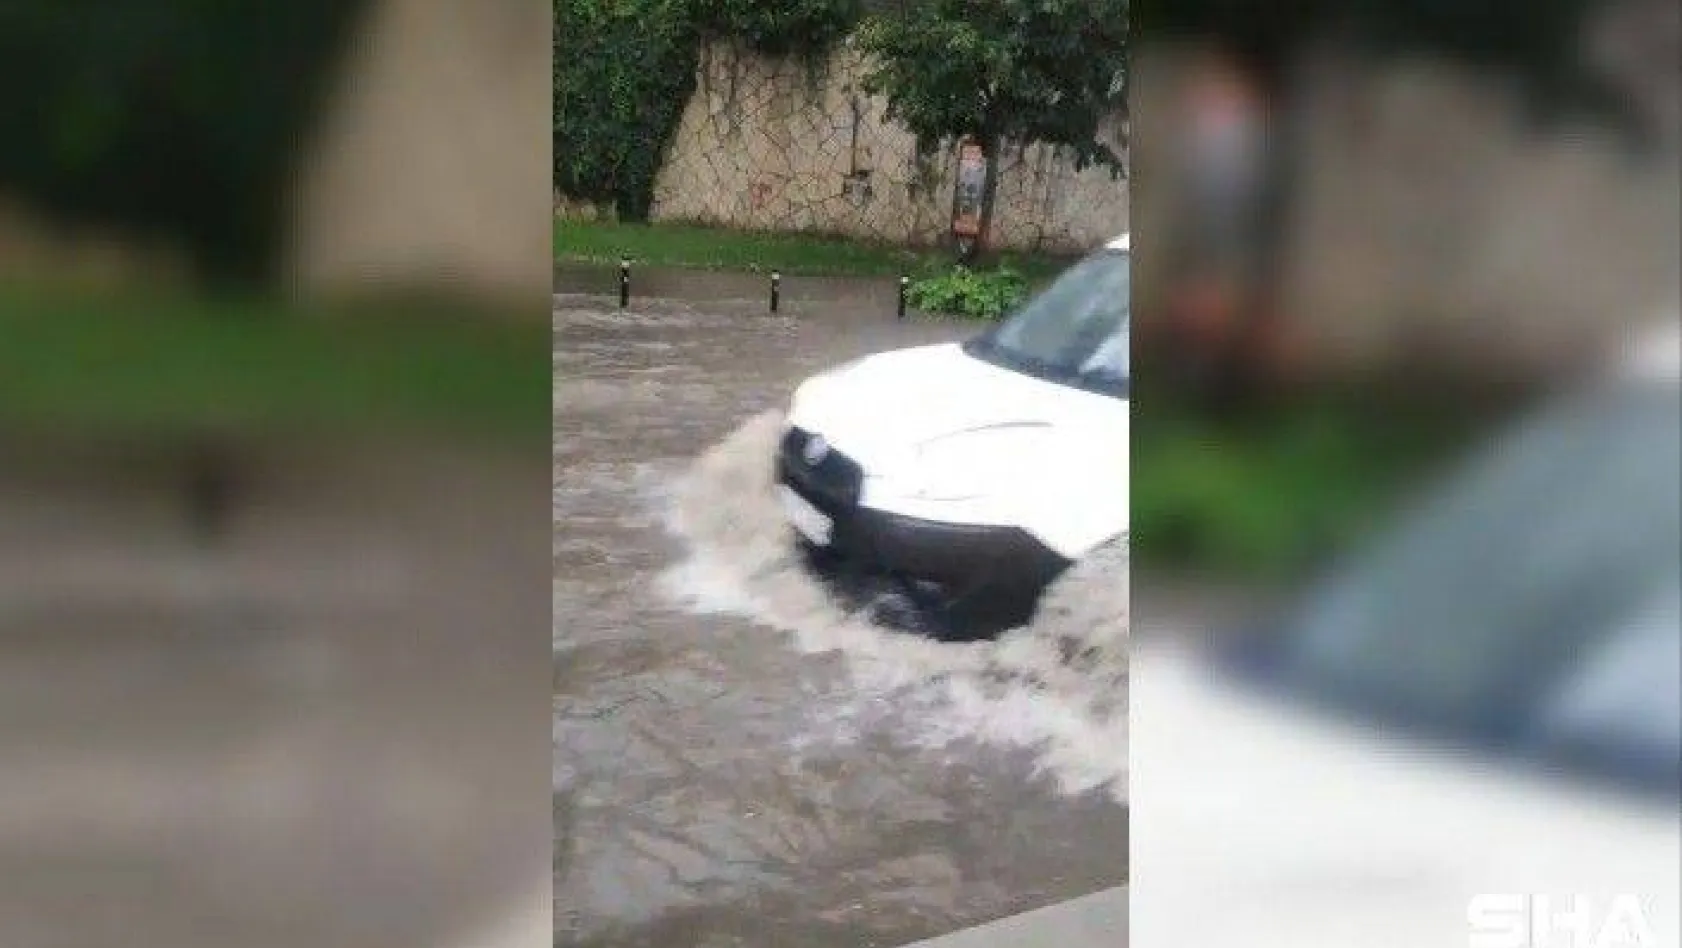 İstanbul'da sağanak yağmur bazı yolları göle çevirdi